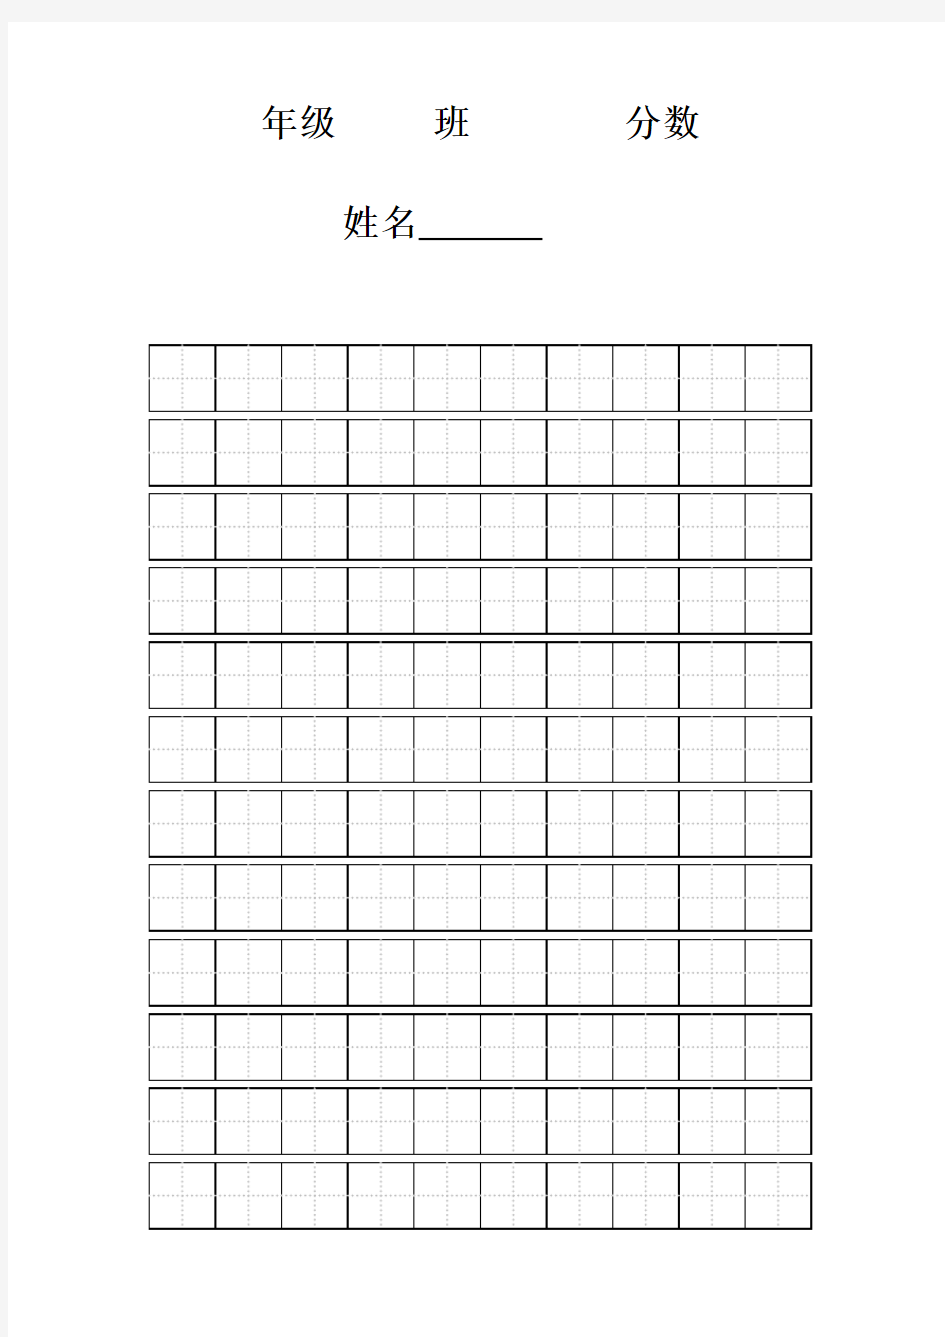 (完整版)硬笔书法练习田字格模板-标准A4打印版